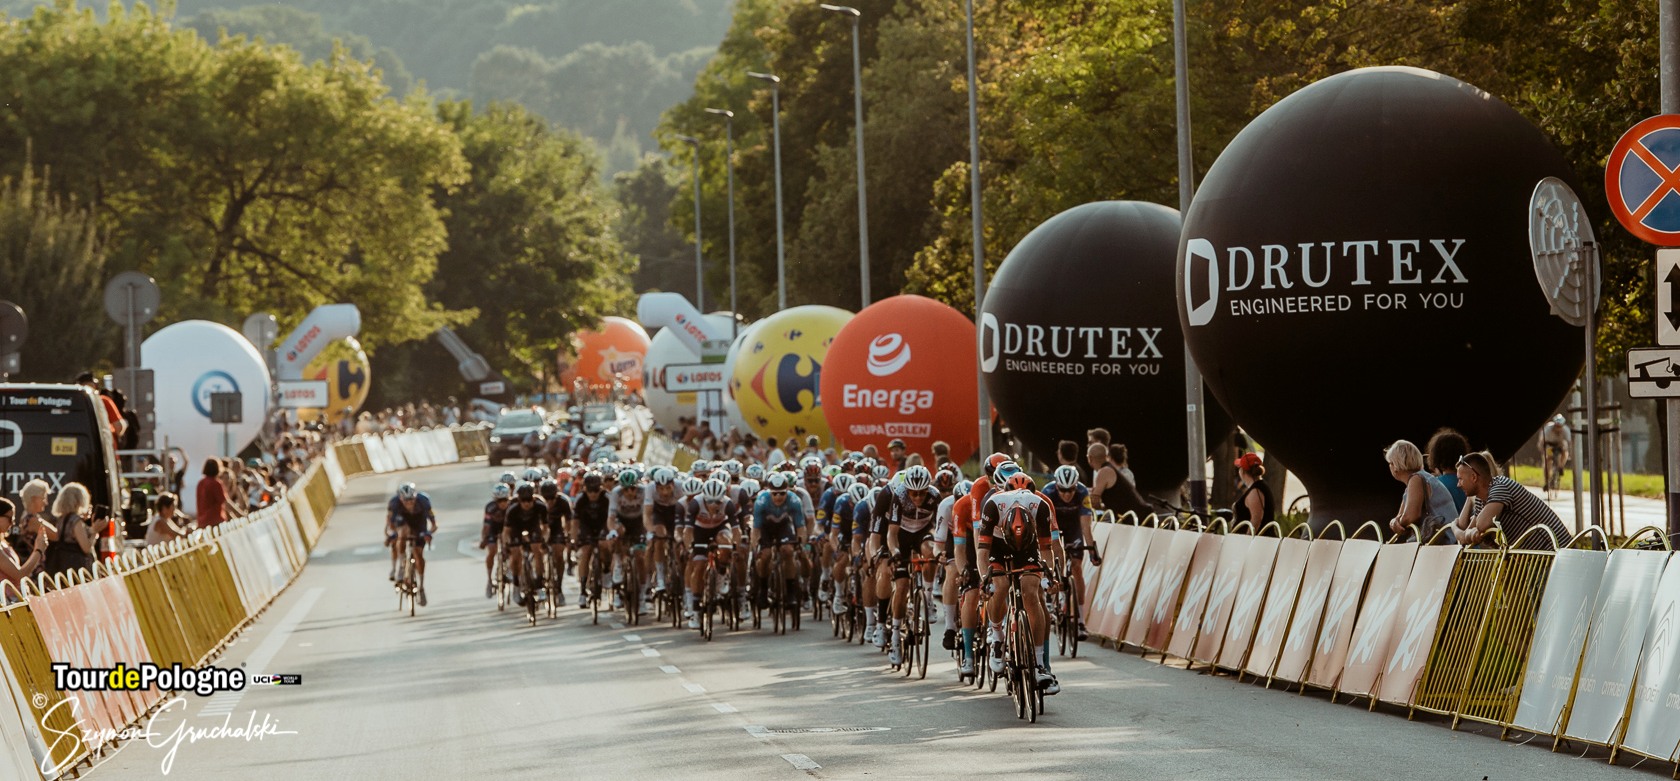 DRUTEX è nuovamente Sponsor Ufficiale del Tour de Pologne